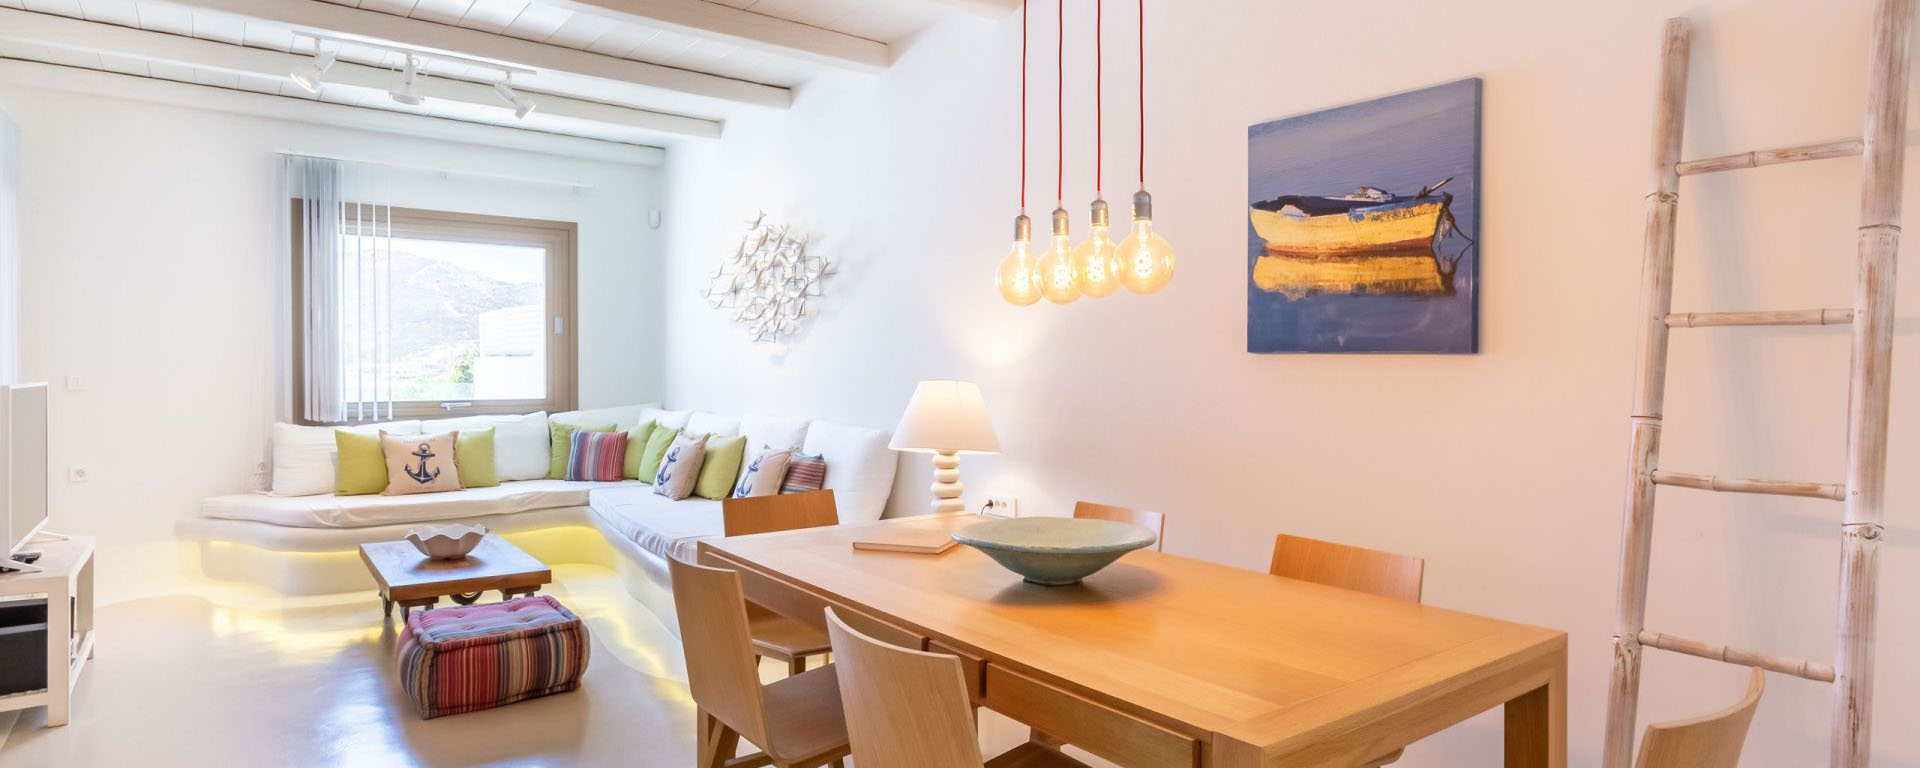 exklusives Ferienhaus Mykonos mit Meerblick